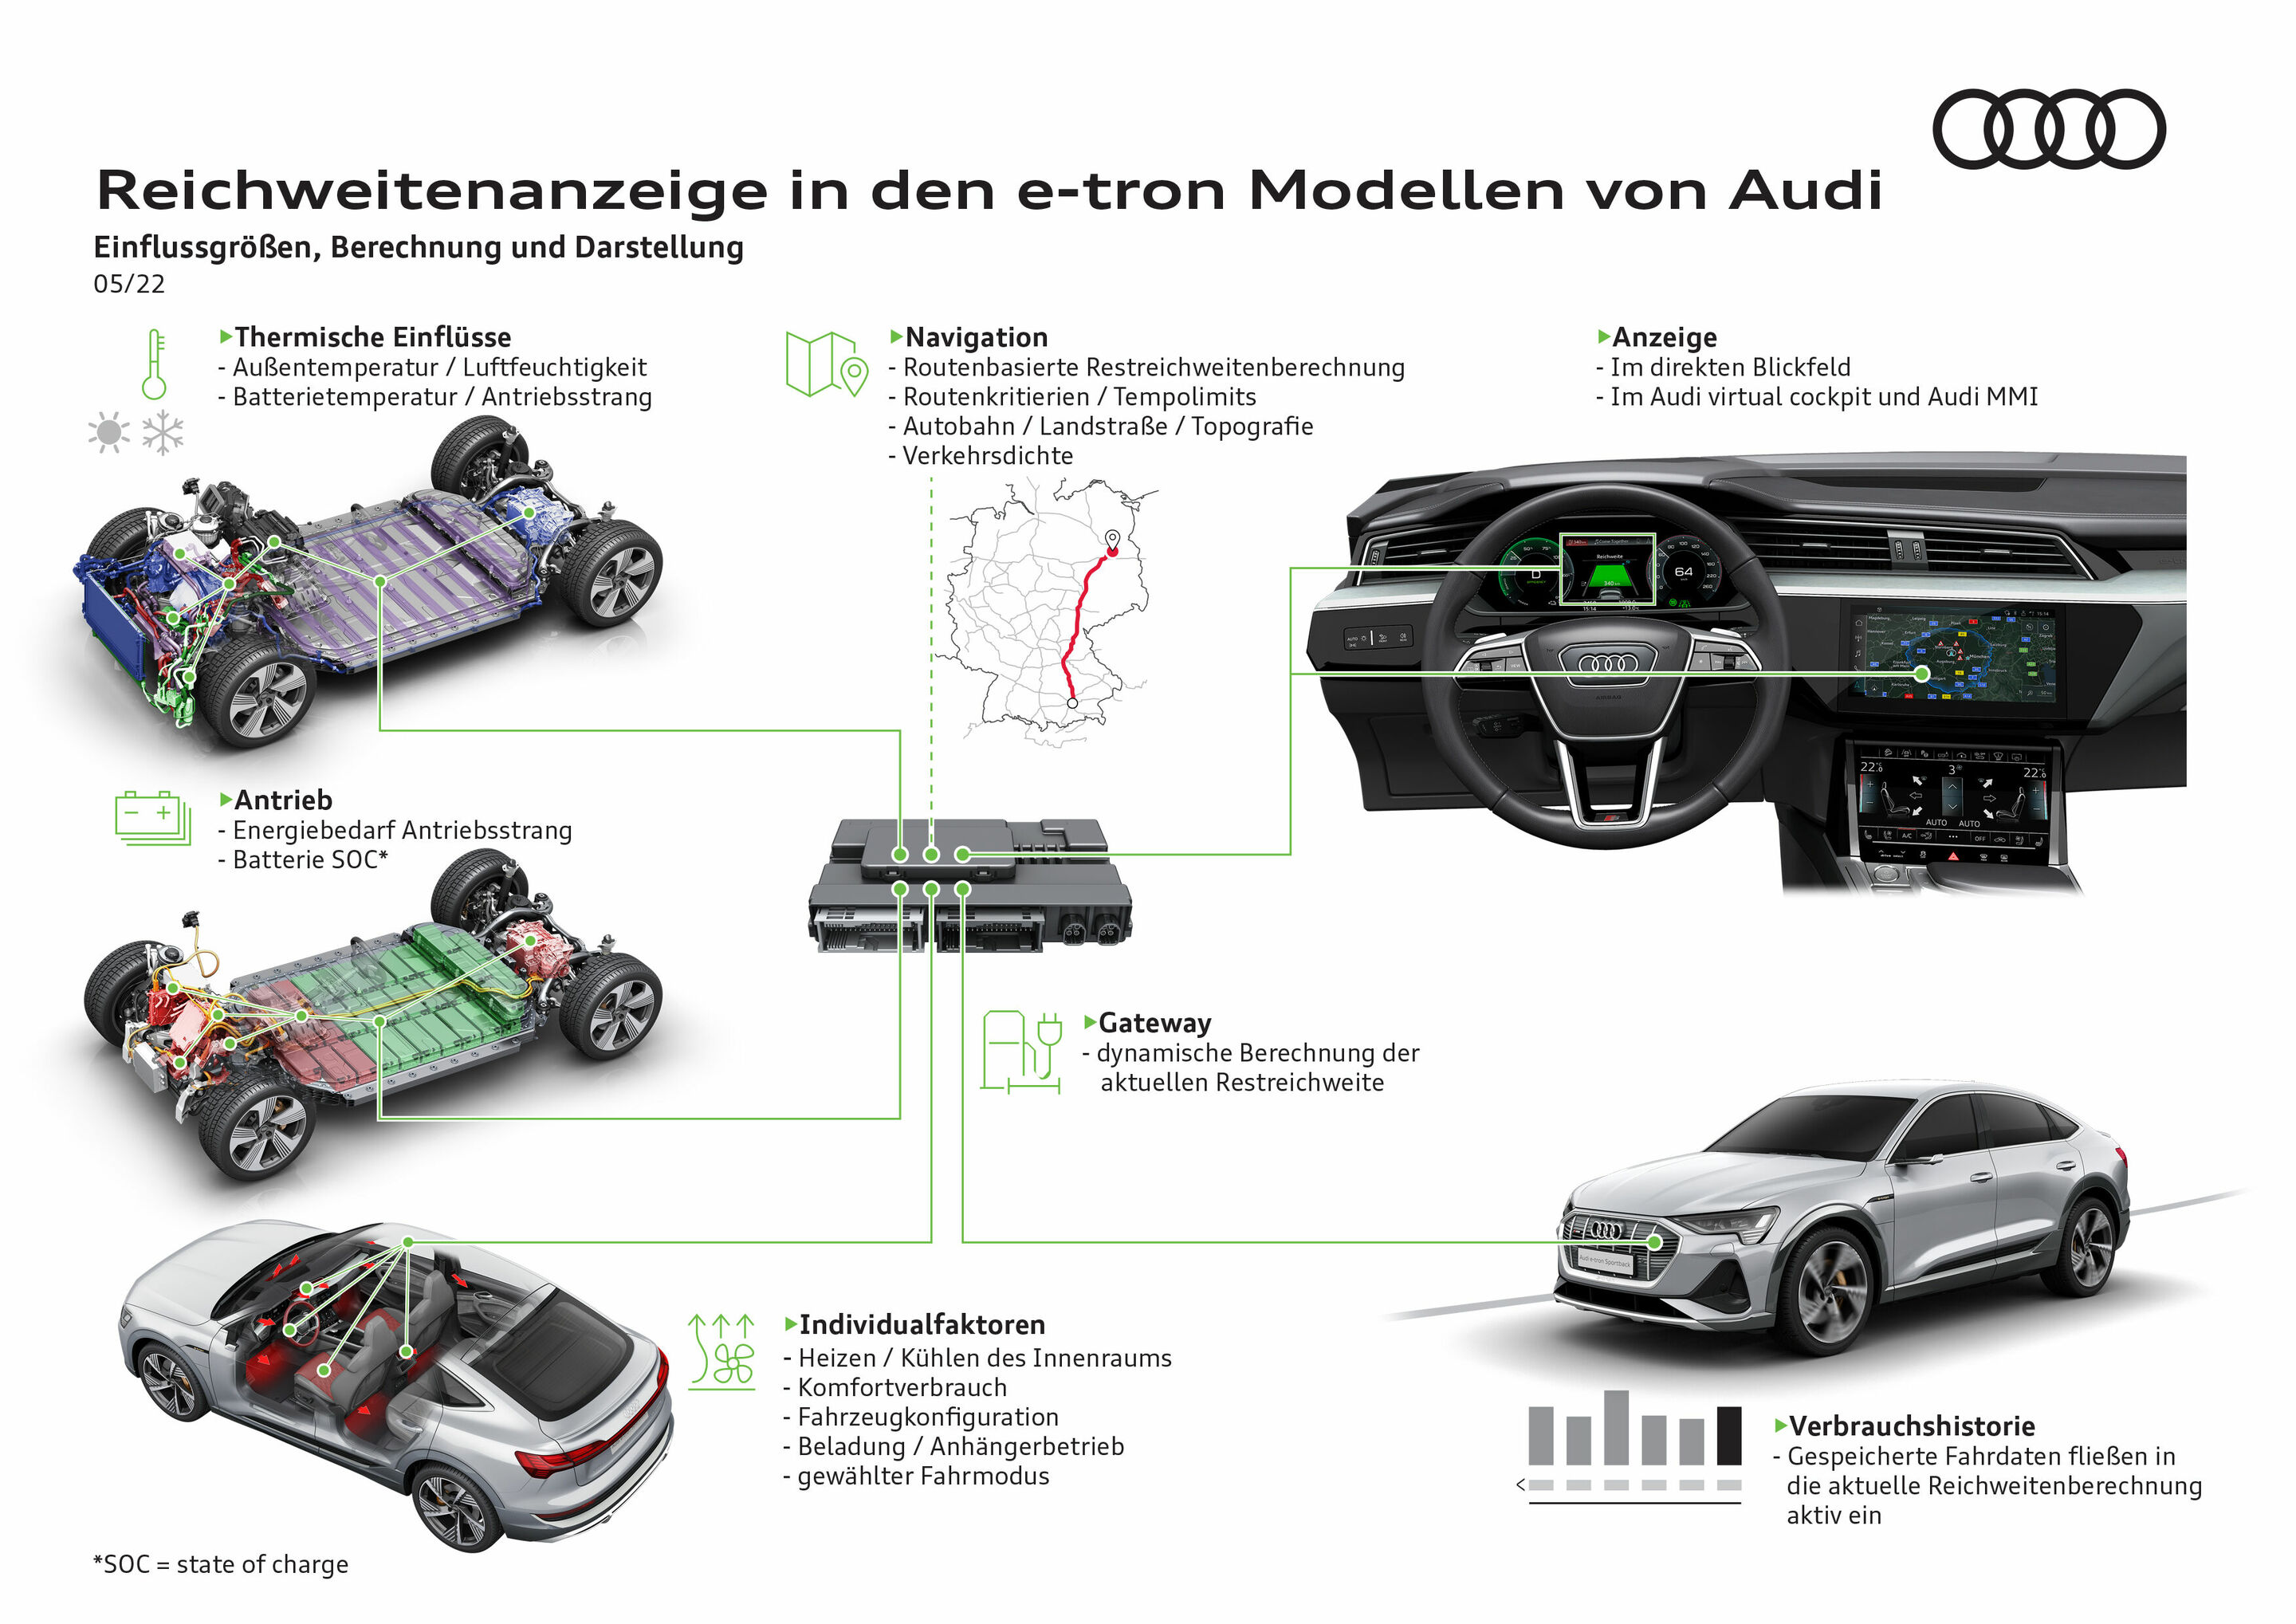 Reichweitenanzeige in den e-tron Modellen von Audi